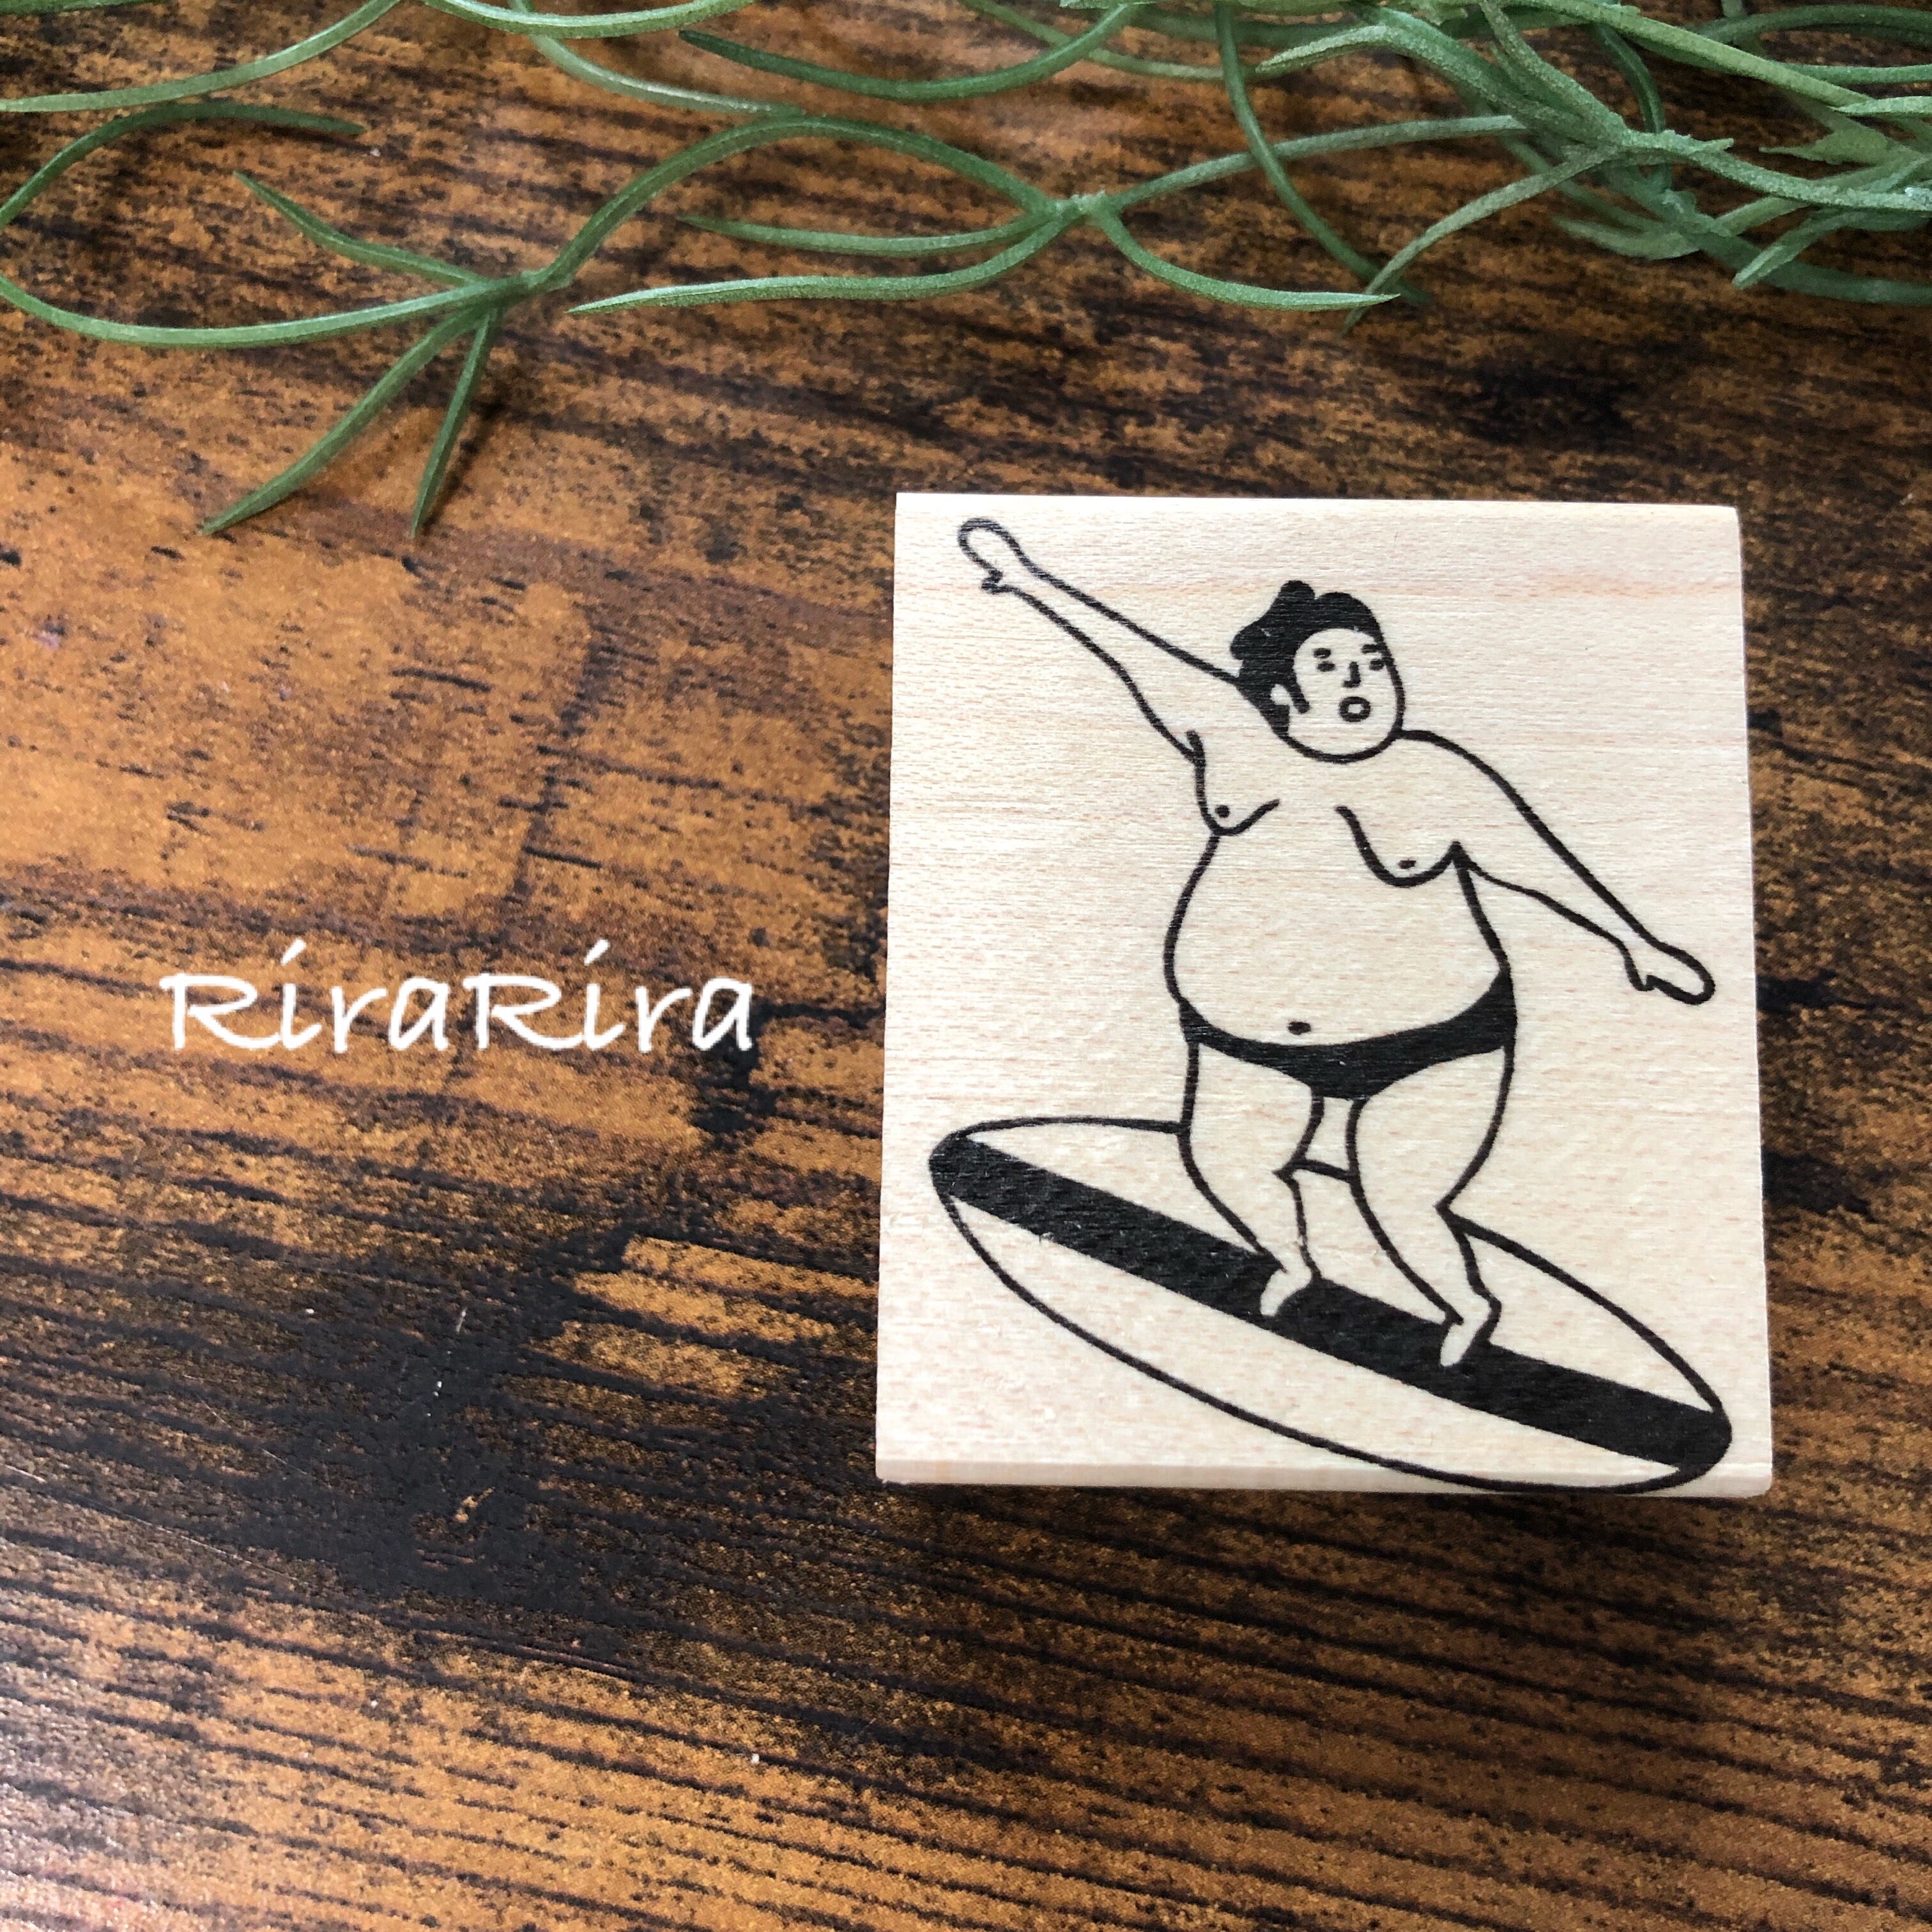 Sumo Wrestler "Surfing"